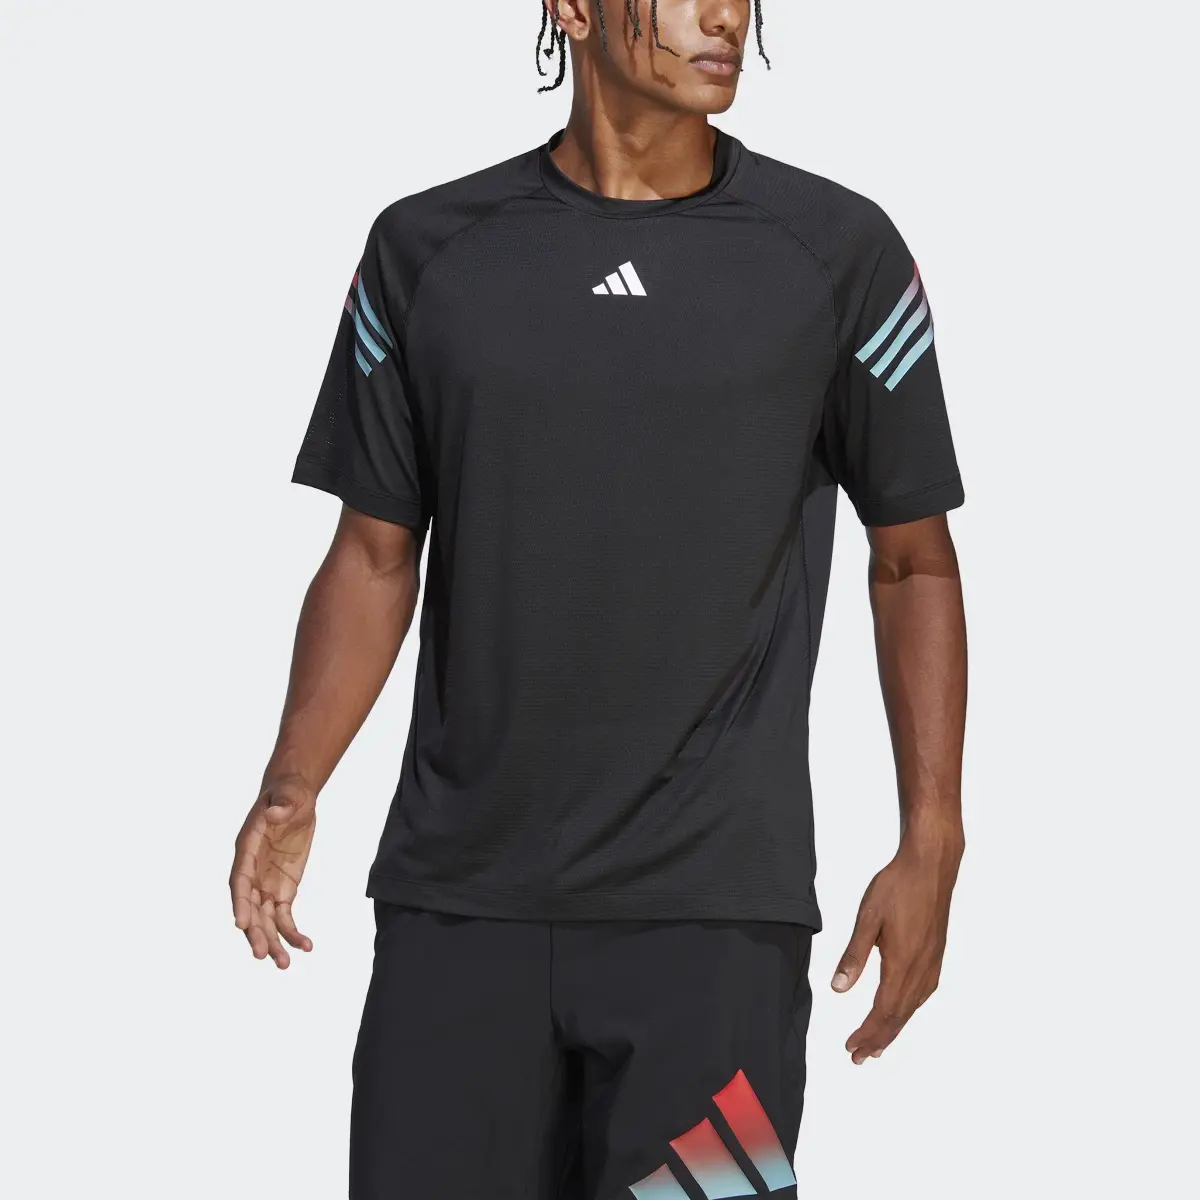 Adidas Train Icons 3-Stripes Training T-Shirt. 1